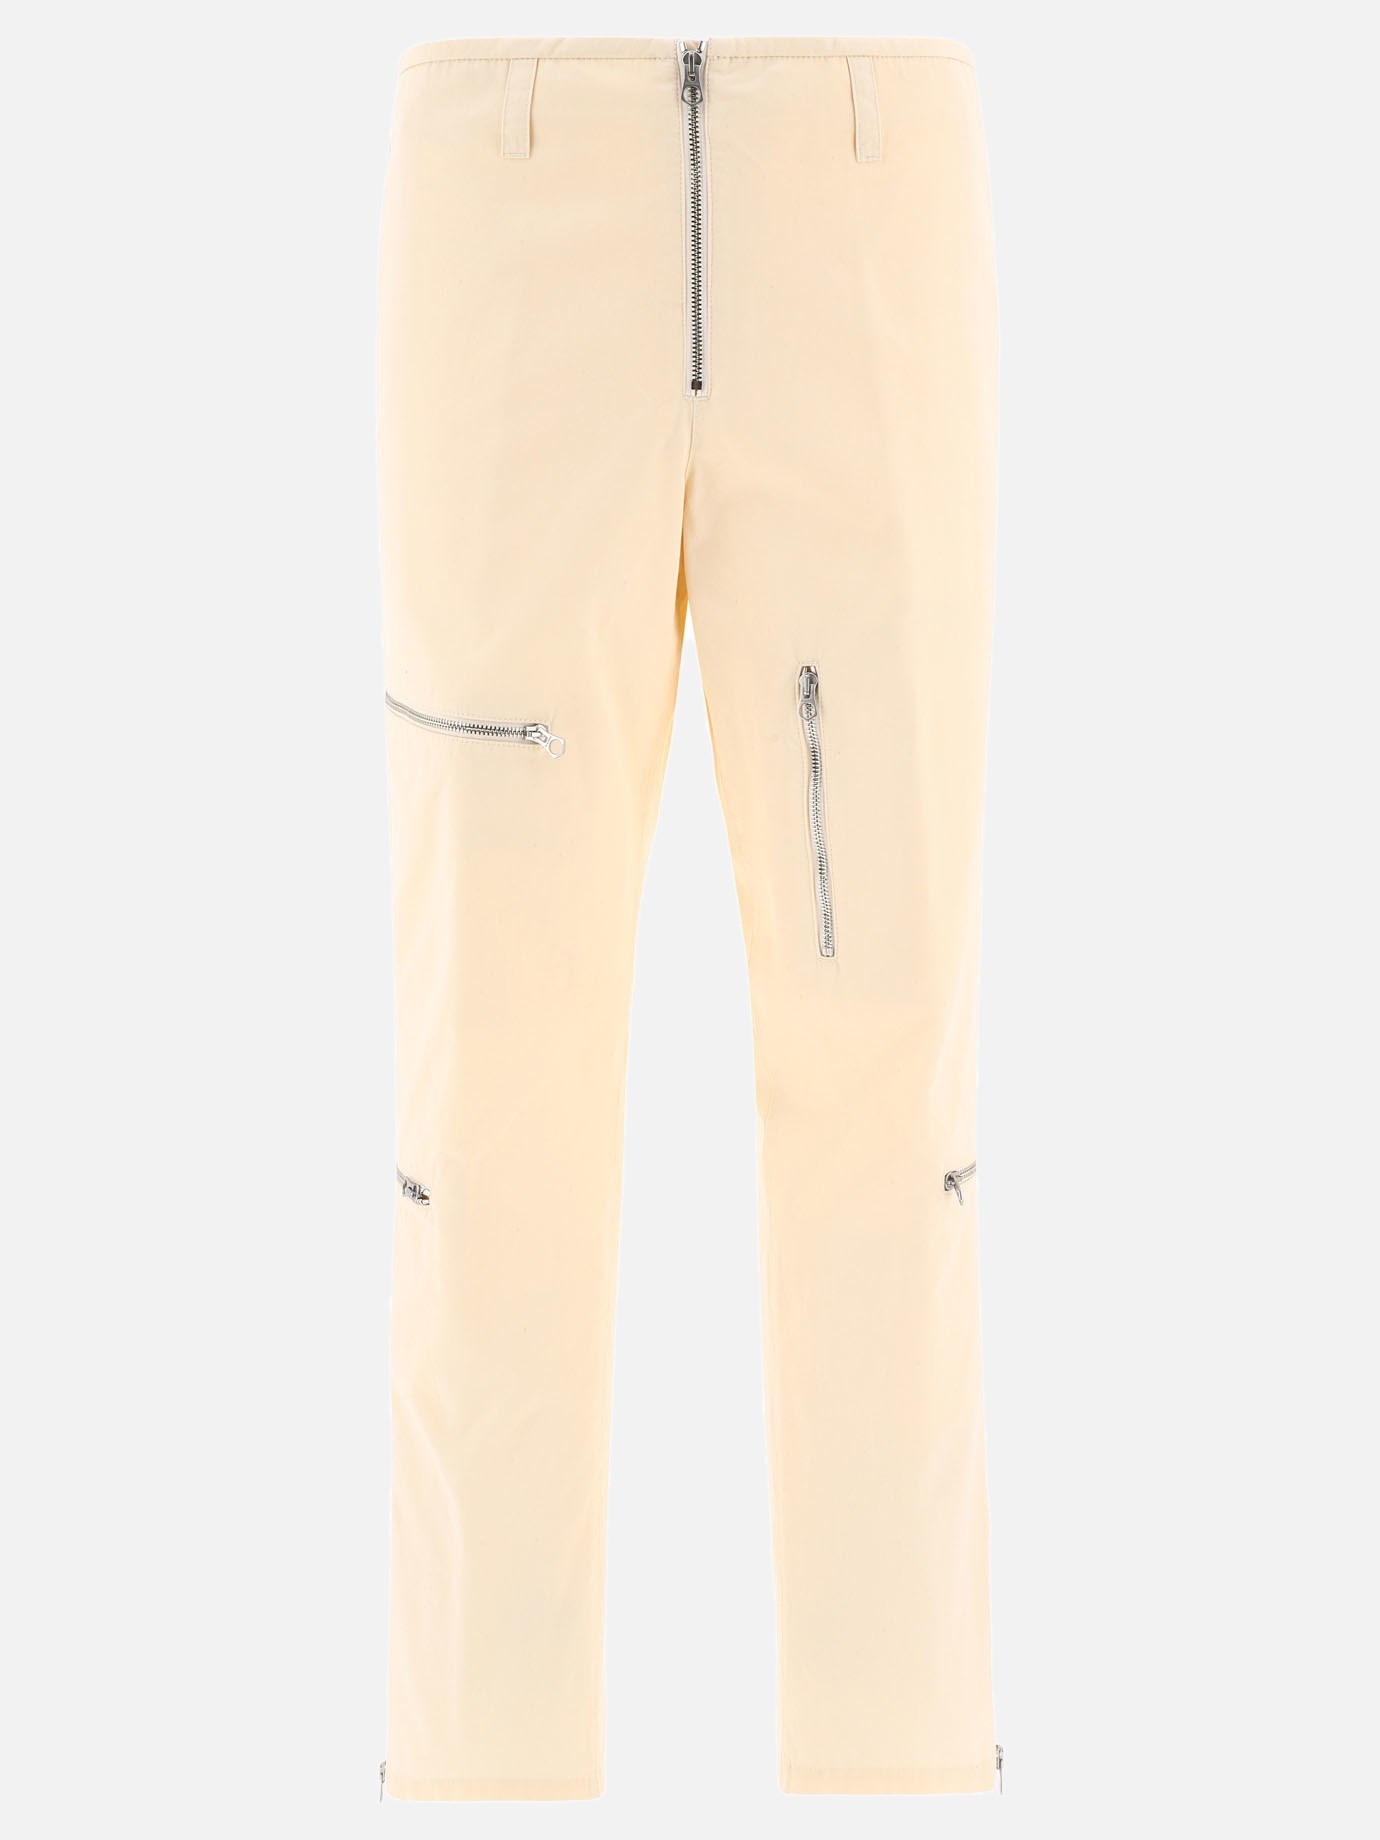 Pants with zipby Jil Sander - 1